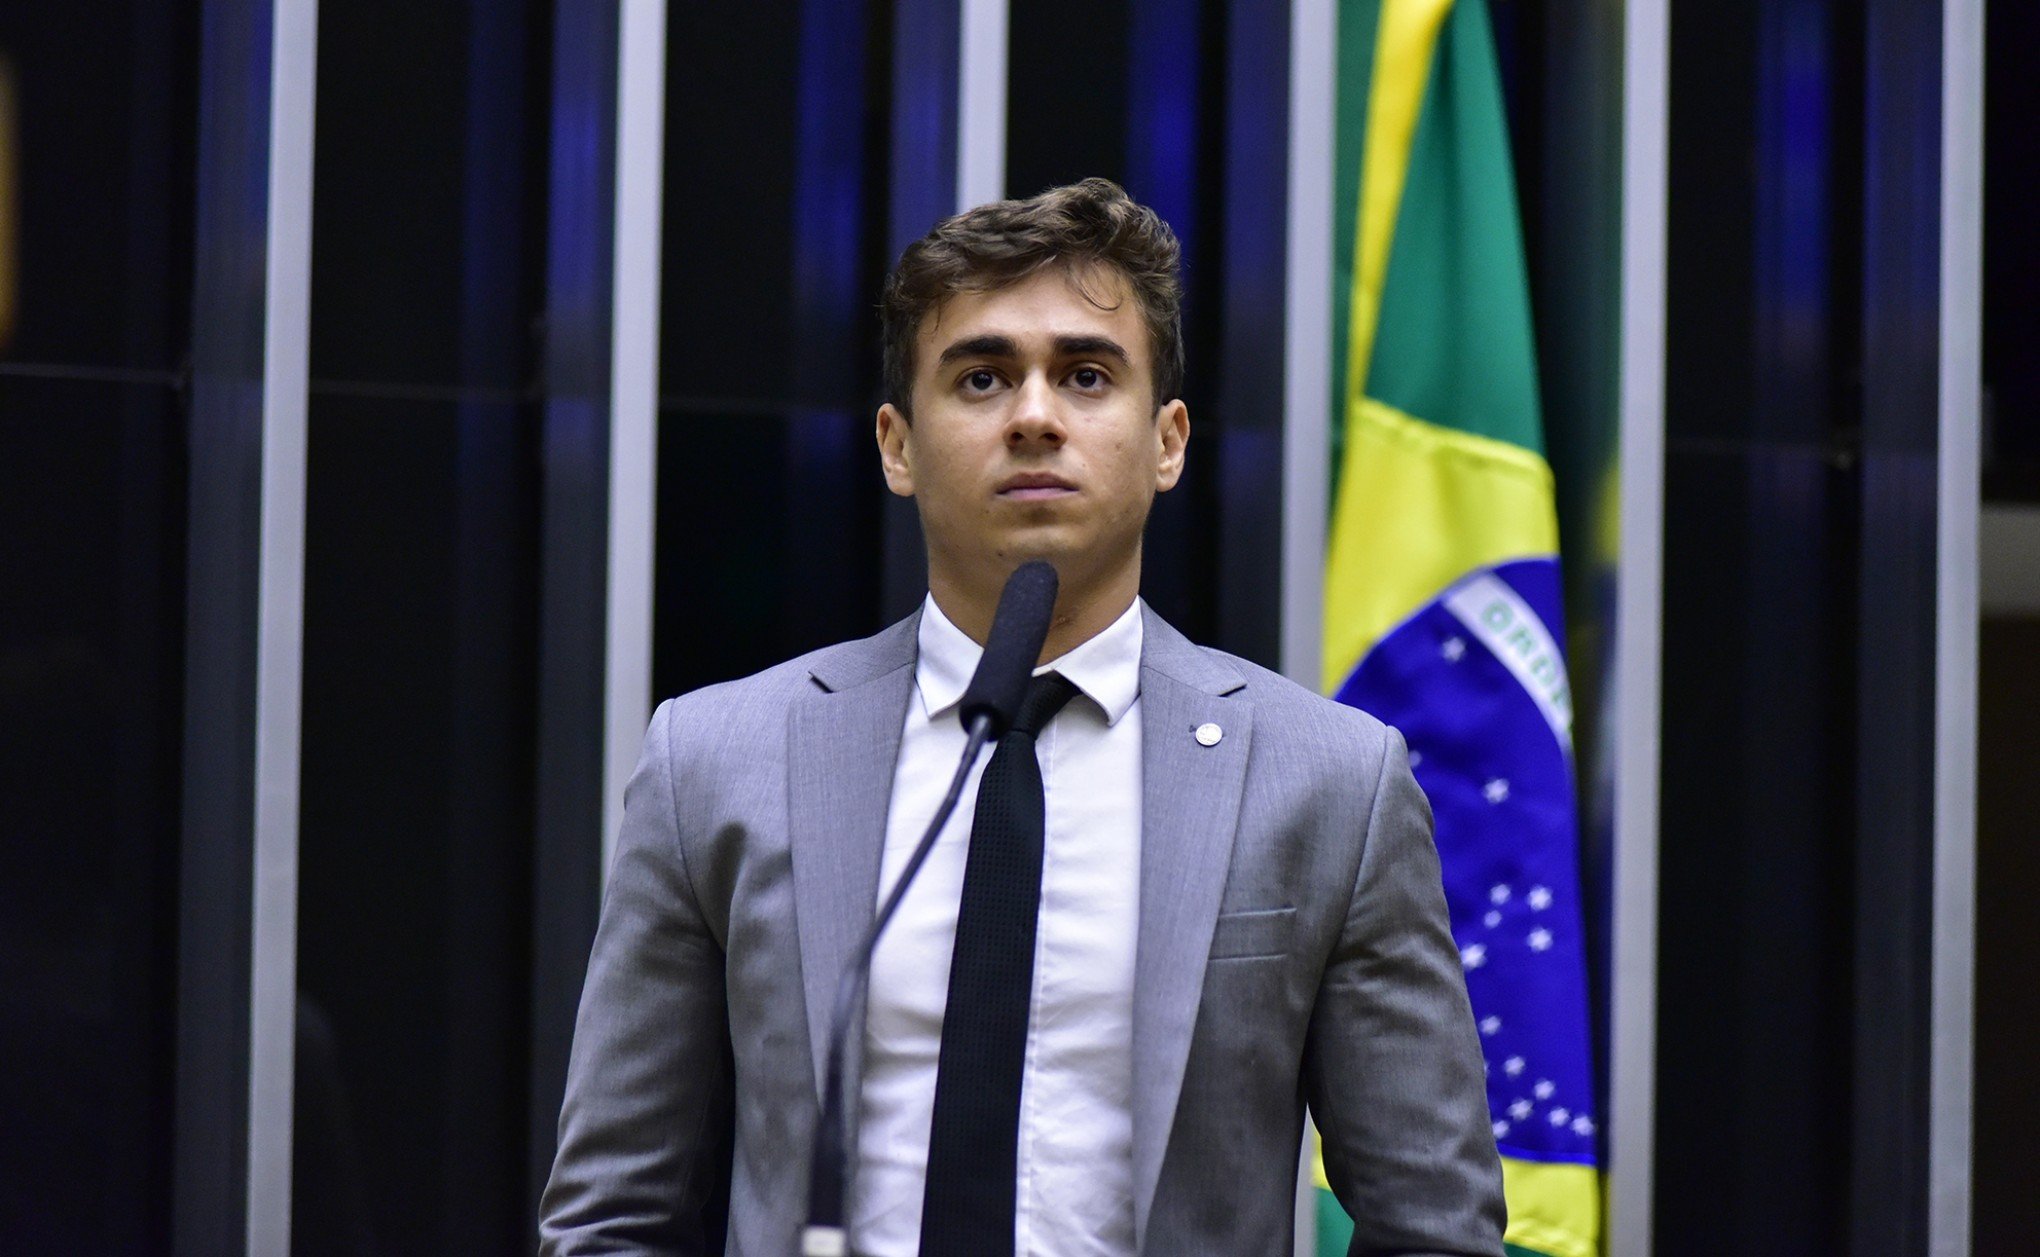 "Nem vou comentar sobre bizarrices": Veja o que o deputado Nikolas Ferreira disse à ministra da Saúde